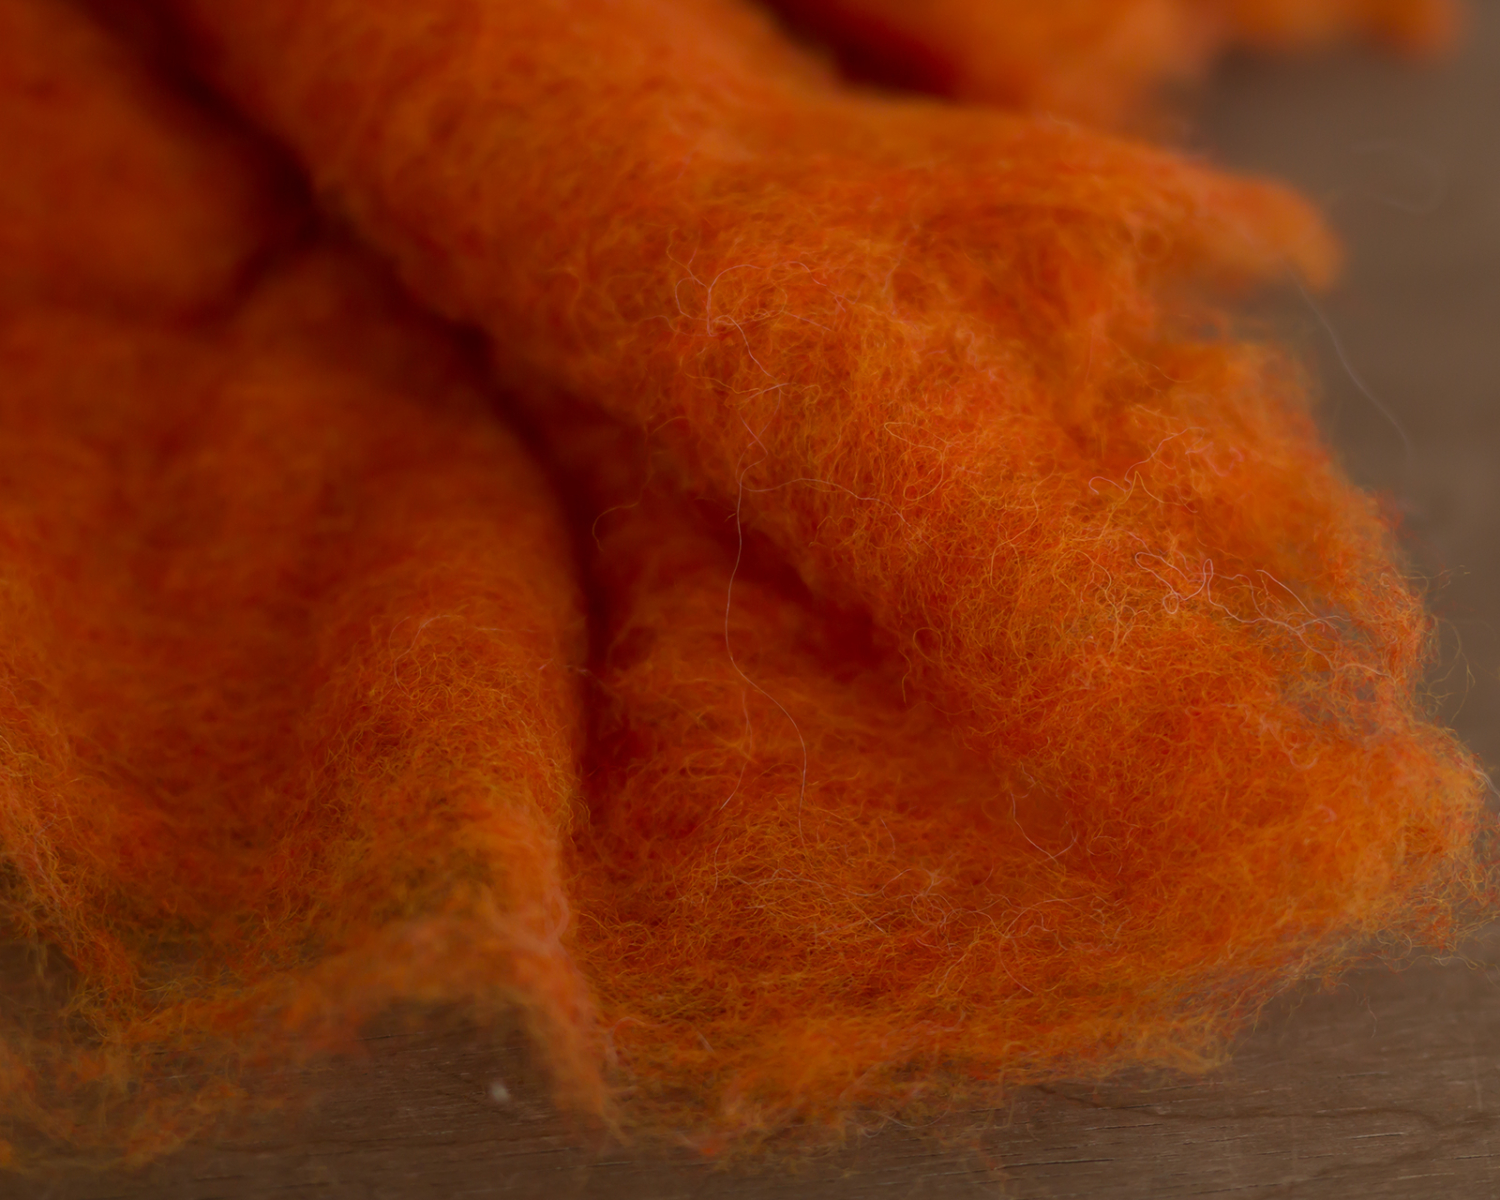 Narancs színű gyapjú töltet - KICSI